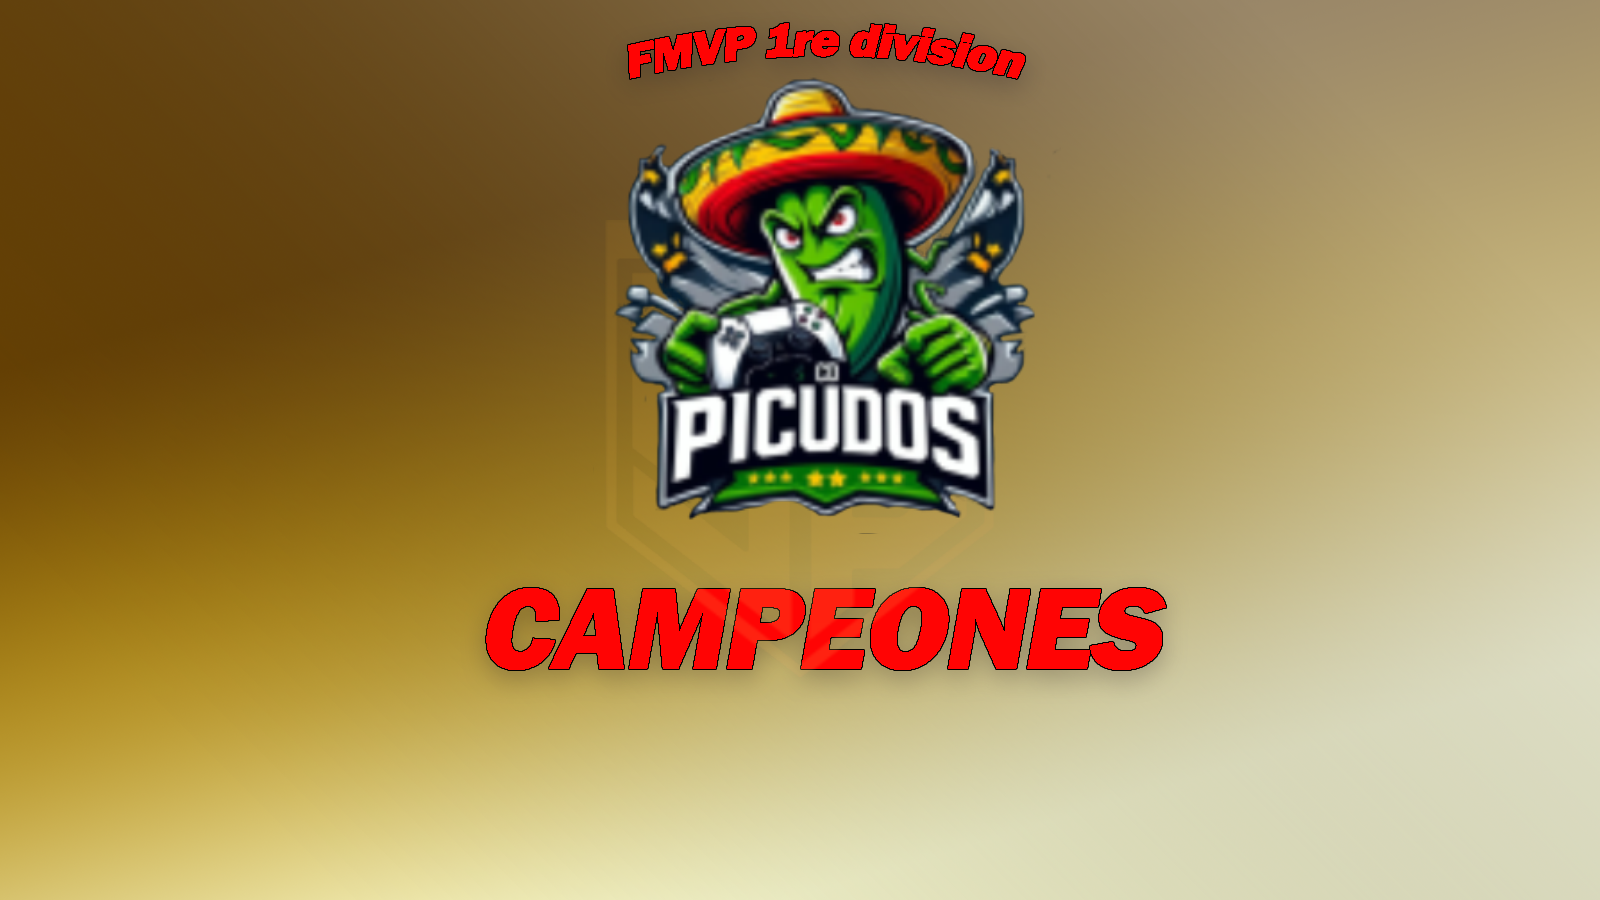 picudos - Picudos CD se lleva el trofeo de campeones en FMVPN 1